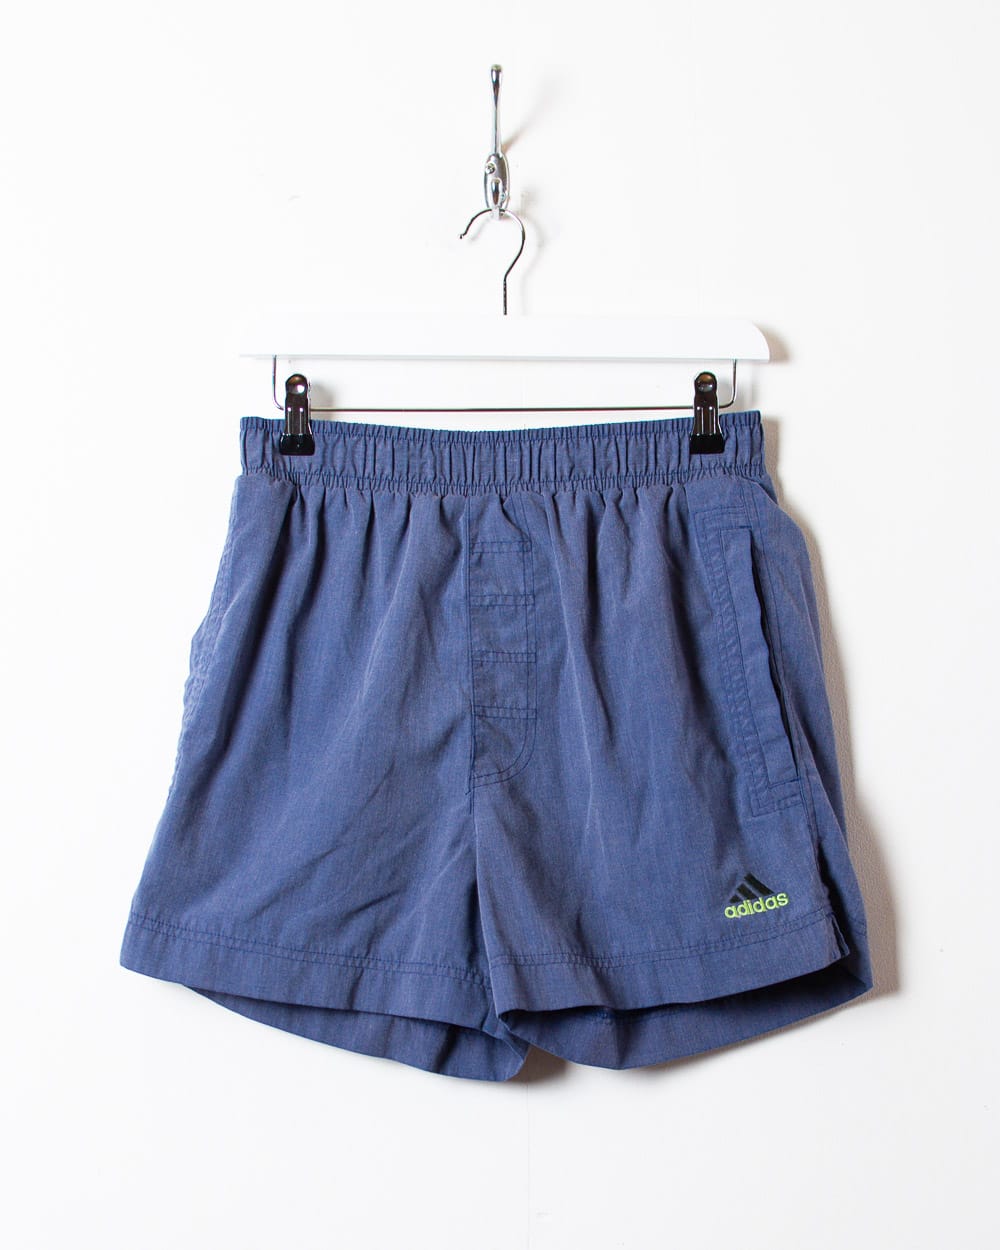 Navy Adidas Shorts - Small